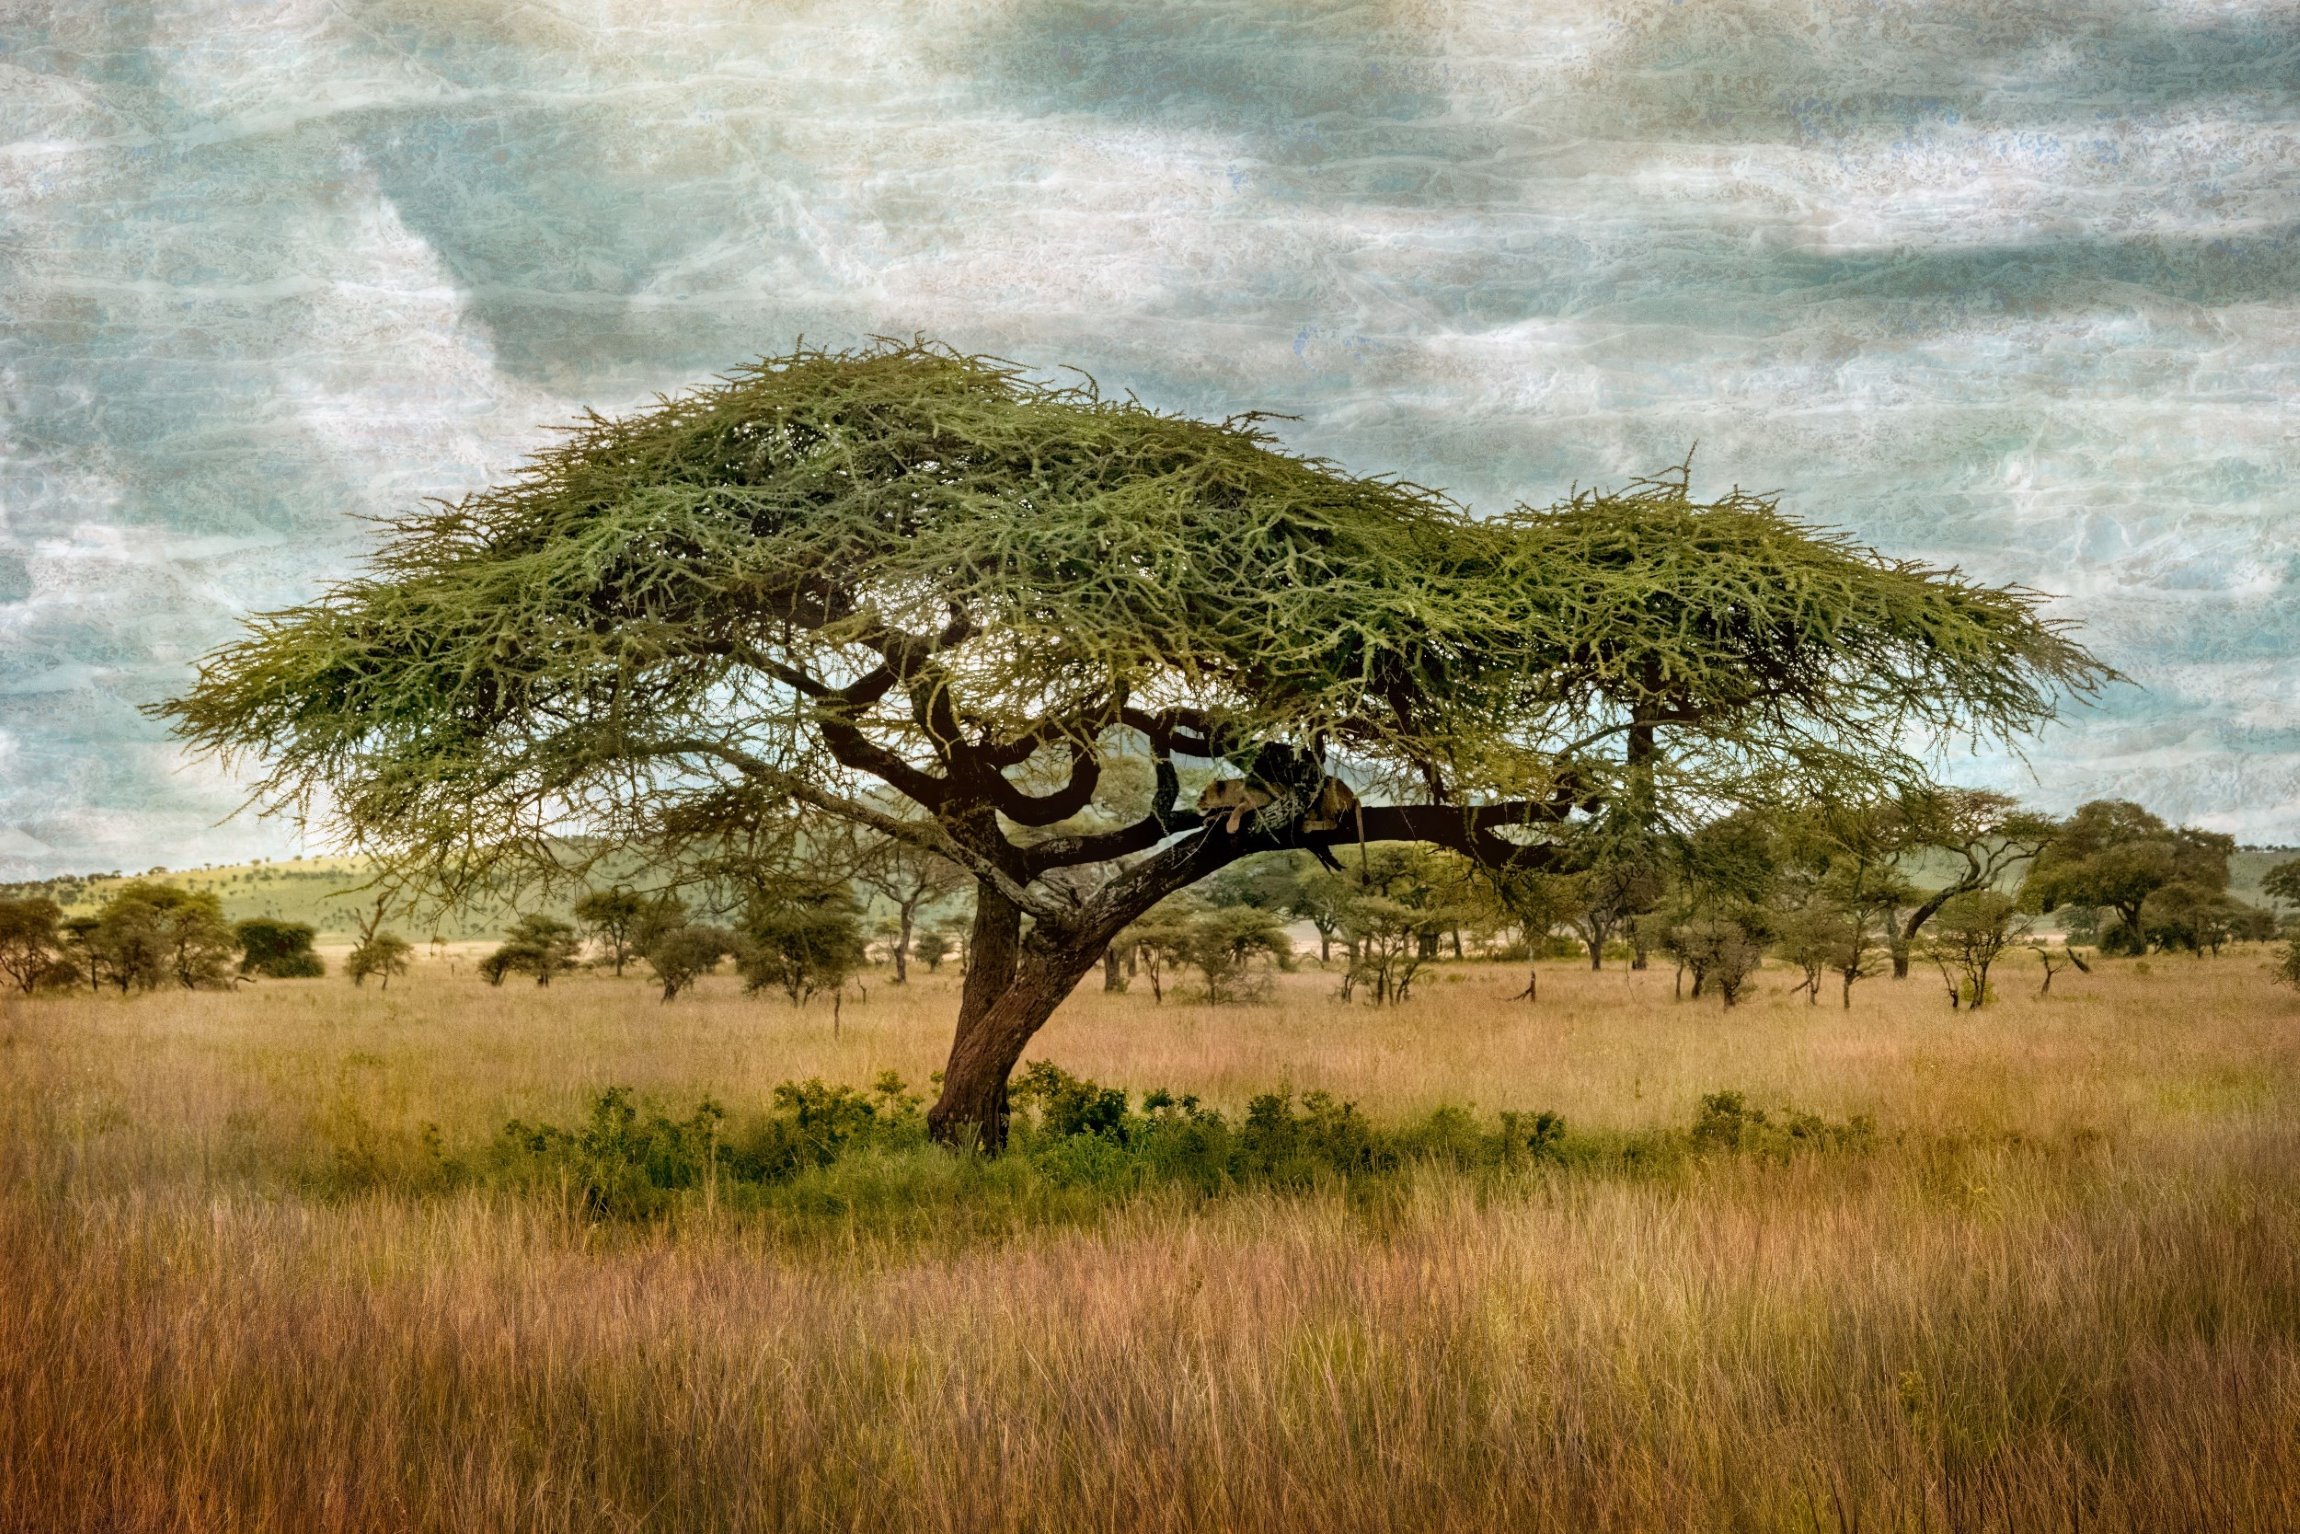 Acacia of Serengeti